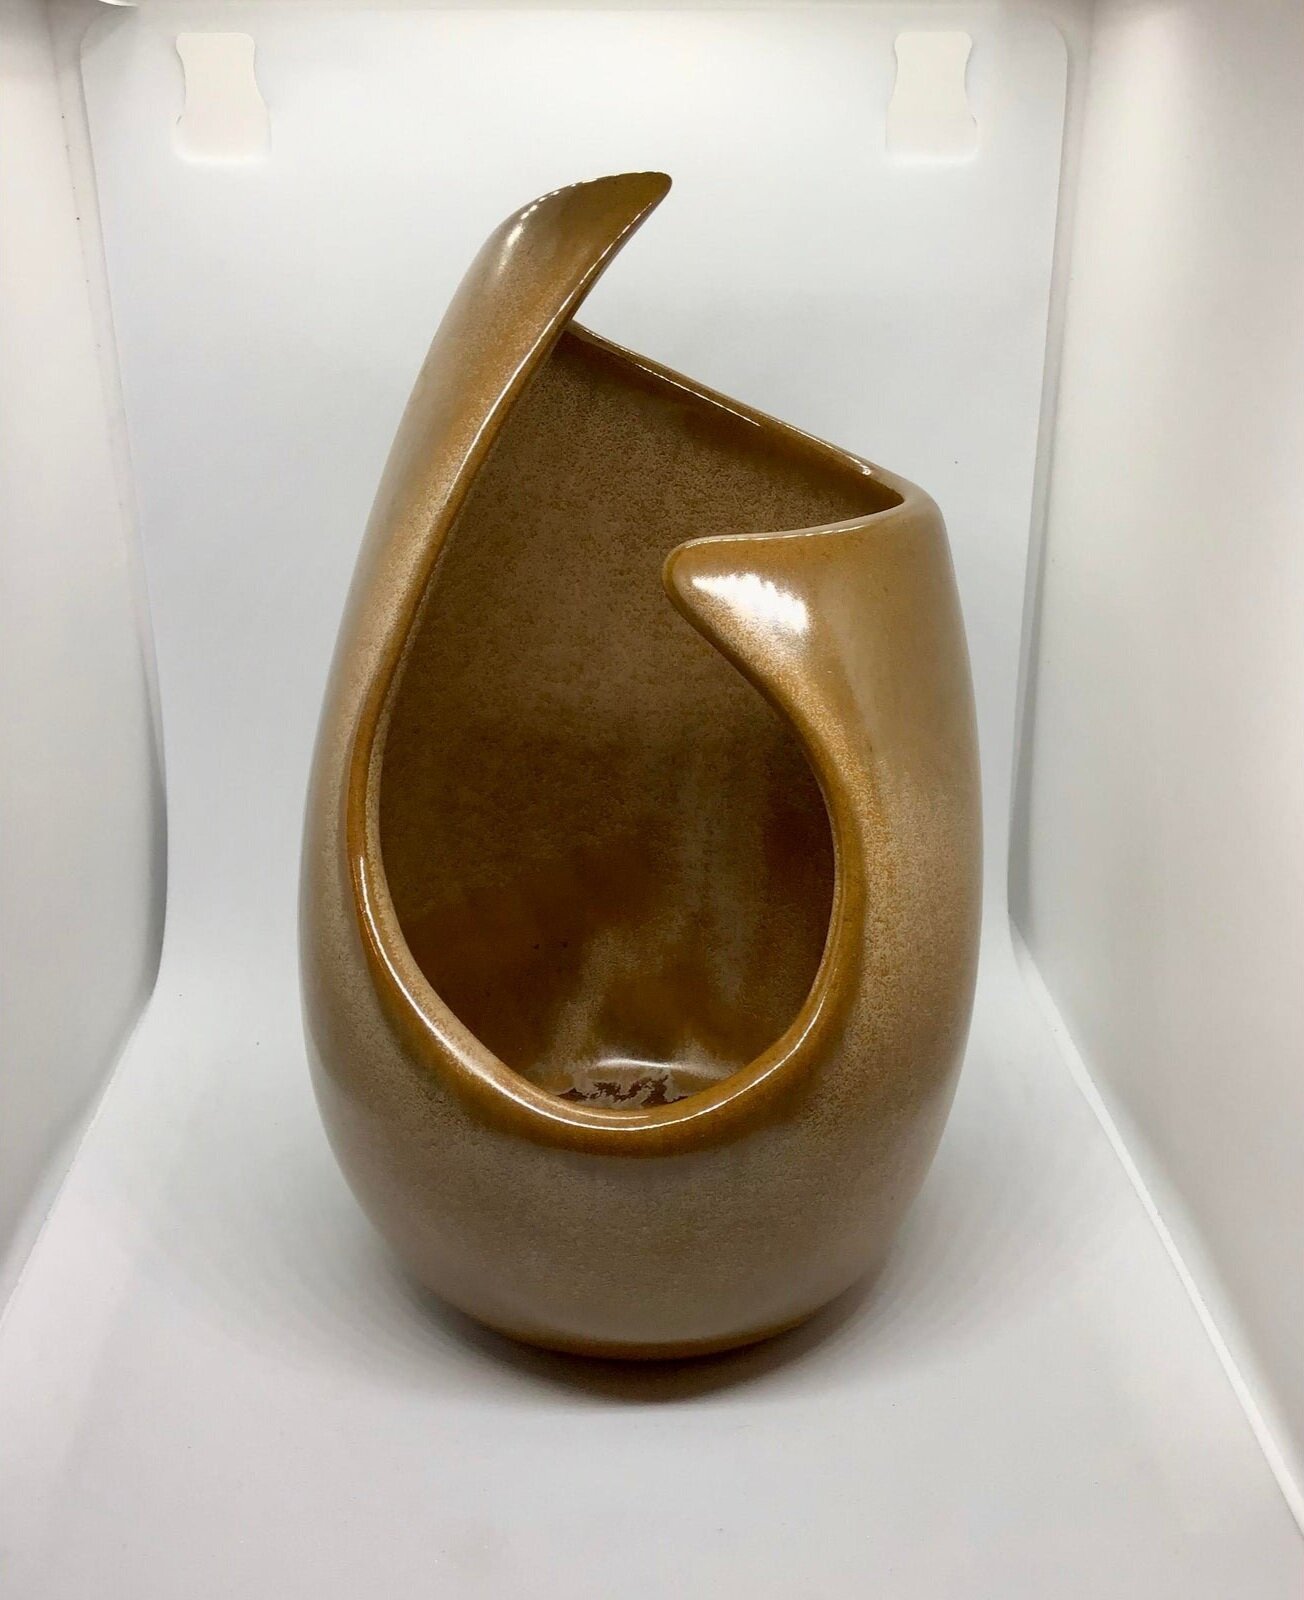 abstract-boho-chic-earth-tone-pottery-5426.jpg